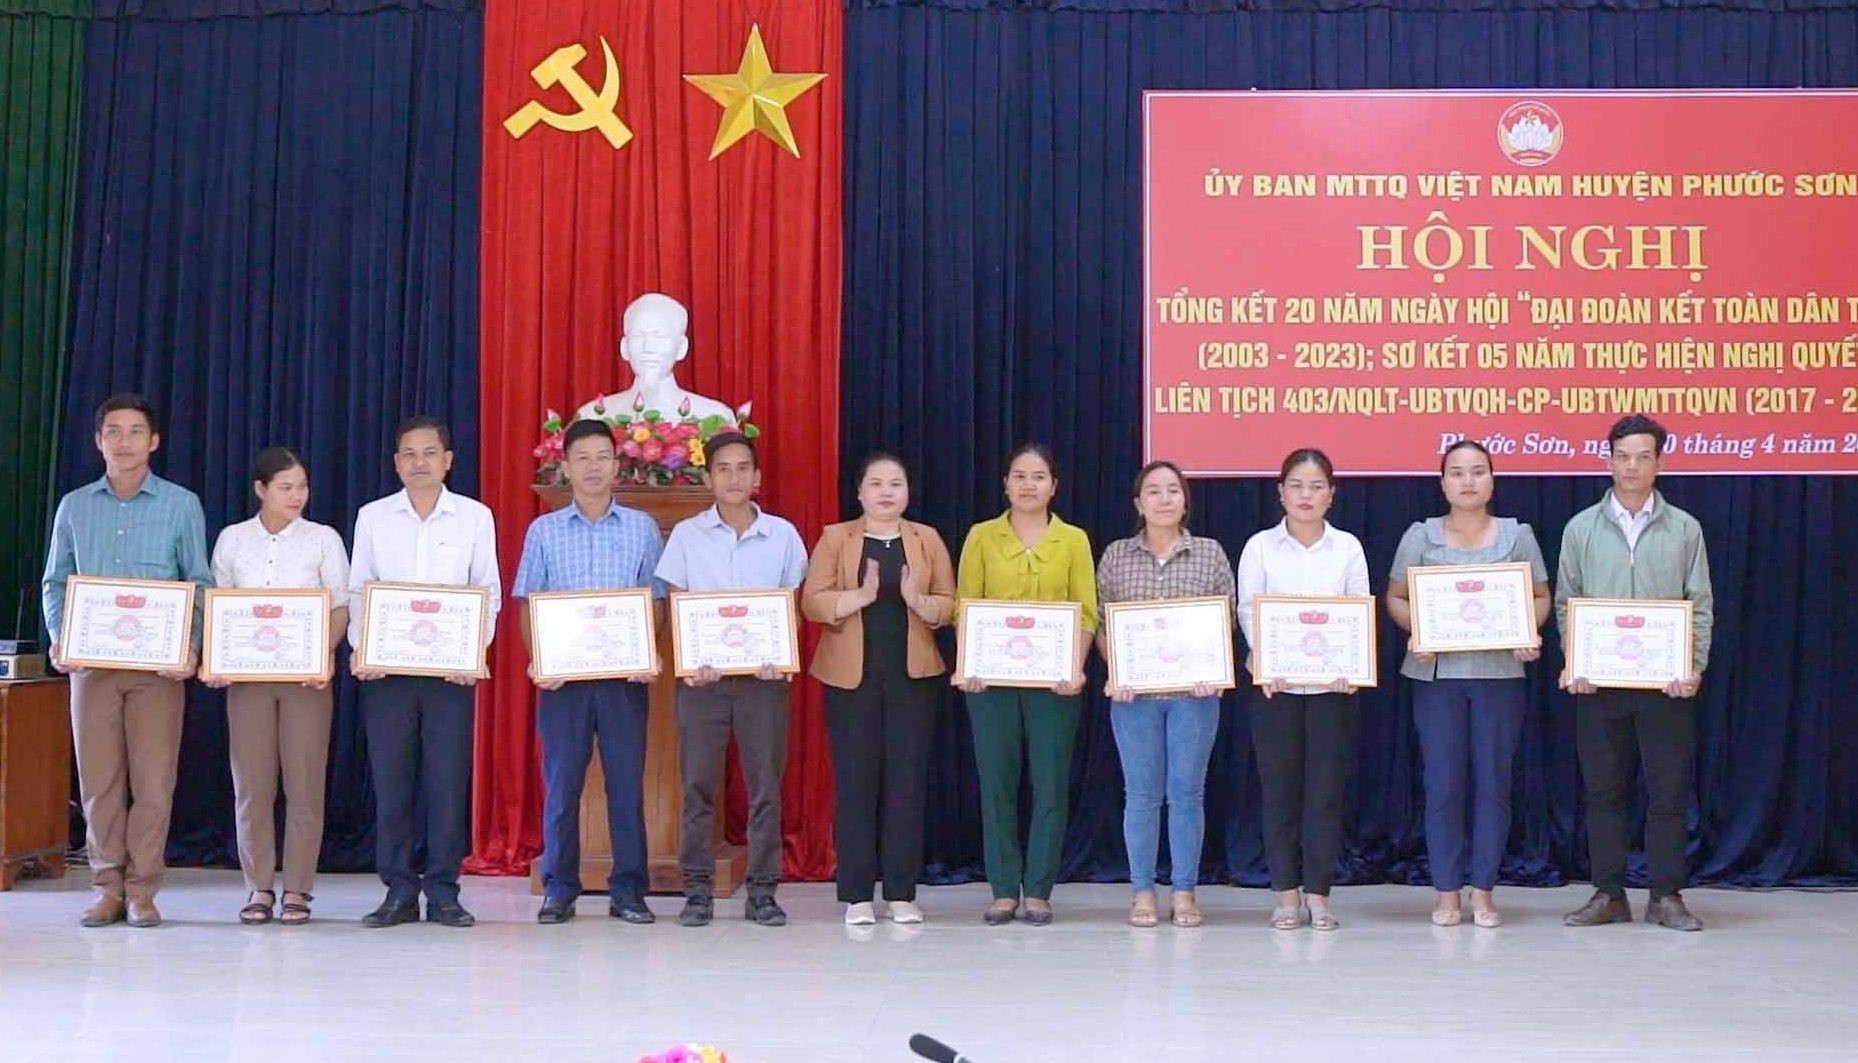 Dịp này, UBND huyện Phước Sơn tặng giấy khen 7 tập thể, 7 cá nhân; Ủy ban MTTQ huyện tặng giấy khen 12 tập thể, 3 cá nhân có nhiều đóng góp trong 20 năm tổ chức Ngày hội đại đoàn kết toàn dân tộc.